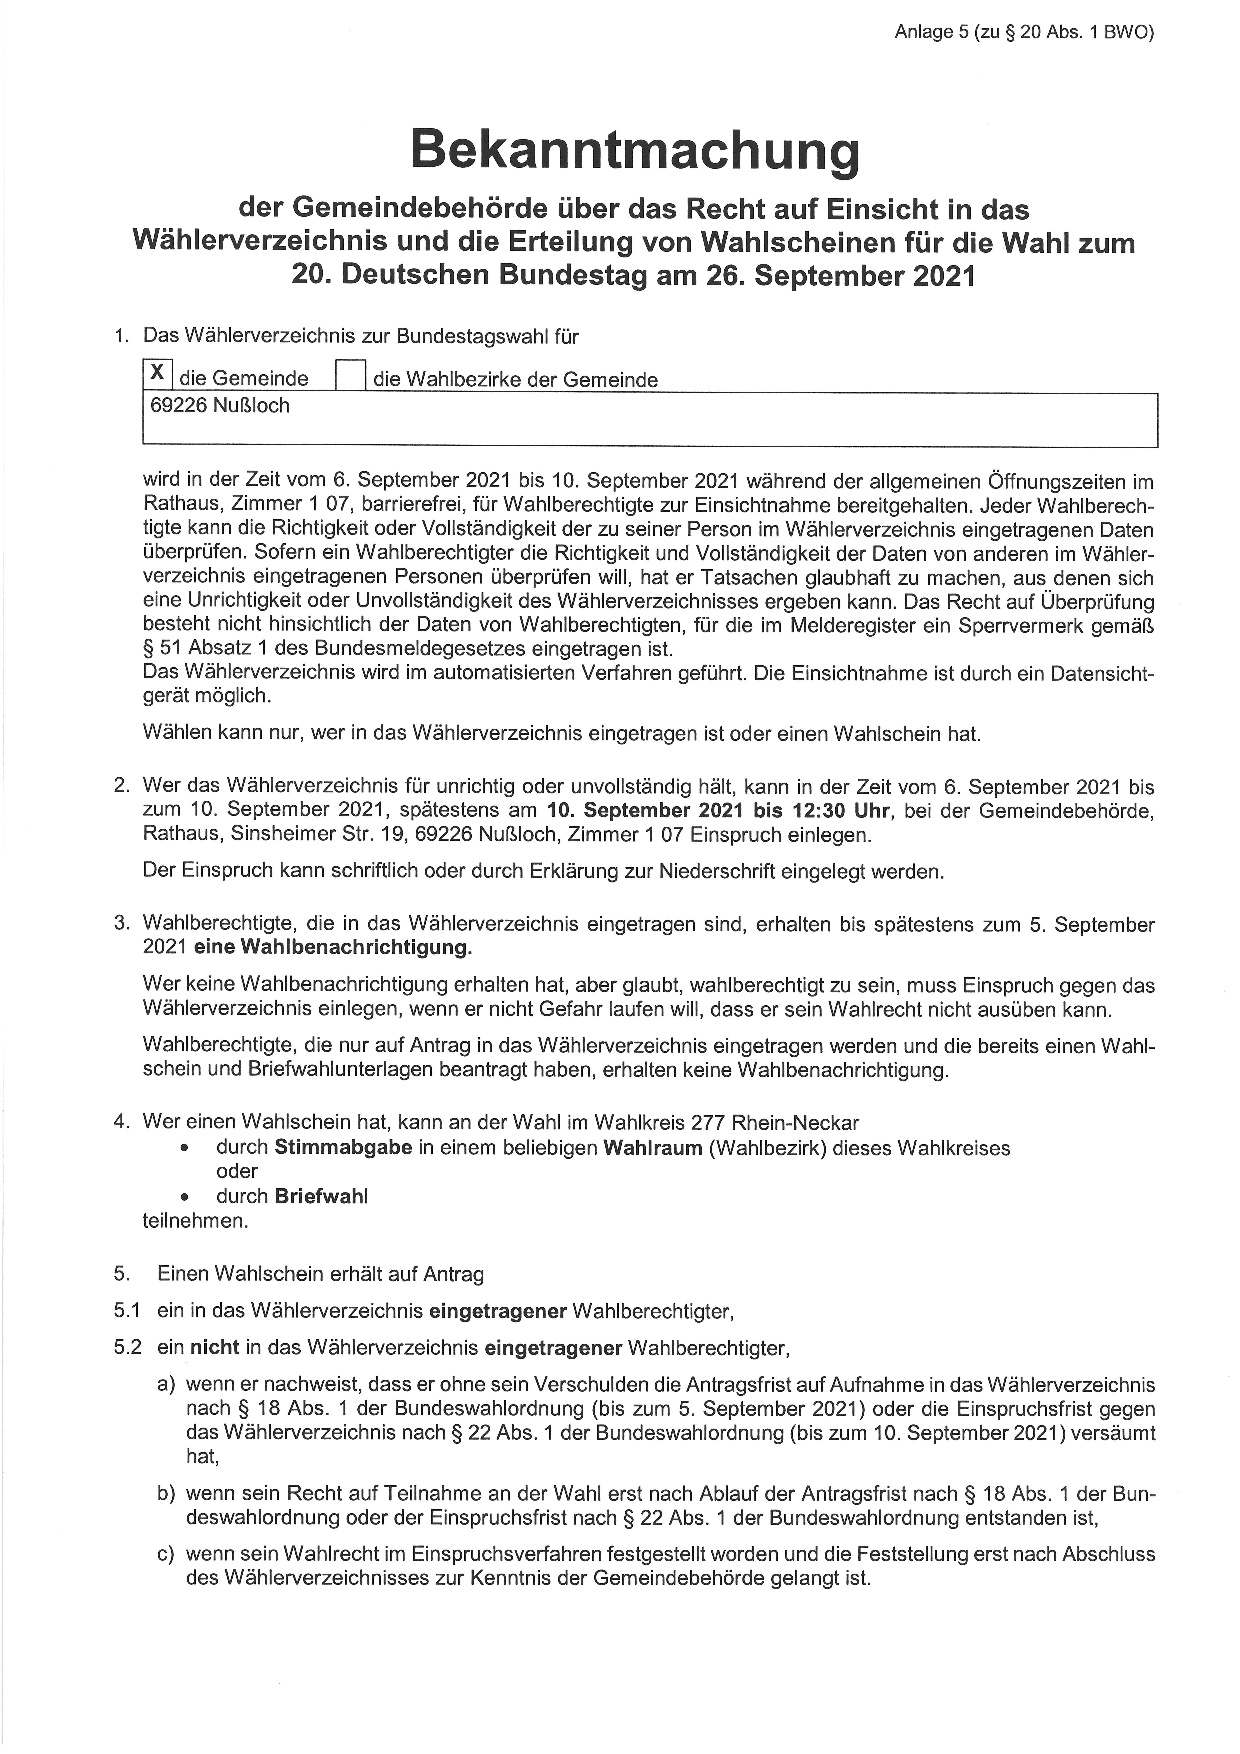 
    
            
                    Bundestagswahl 26.09.2021 Wählerverzeichnis Seite 1
                
        
